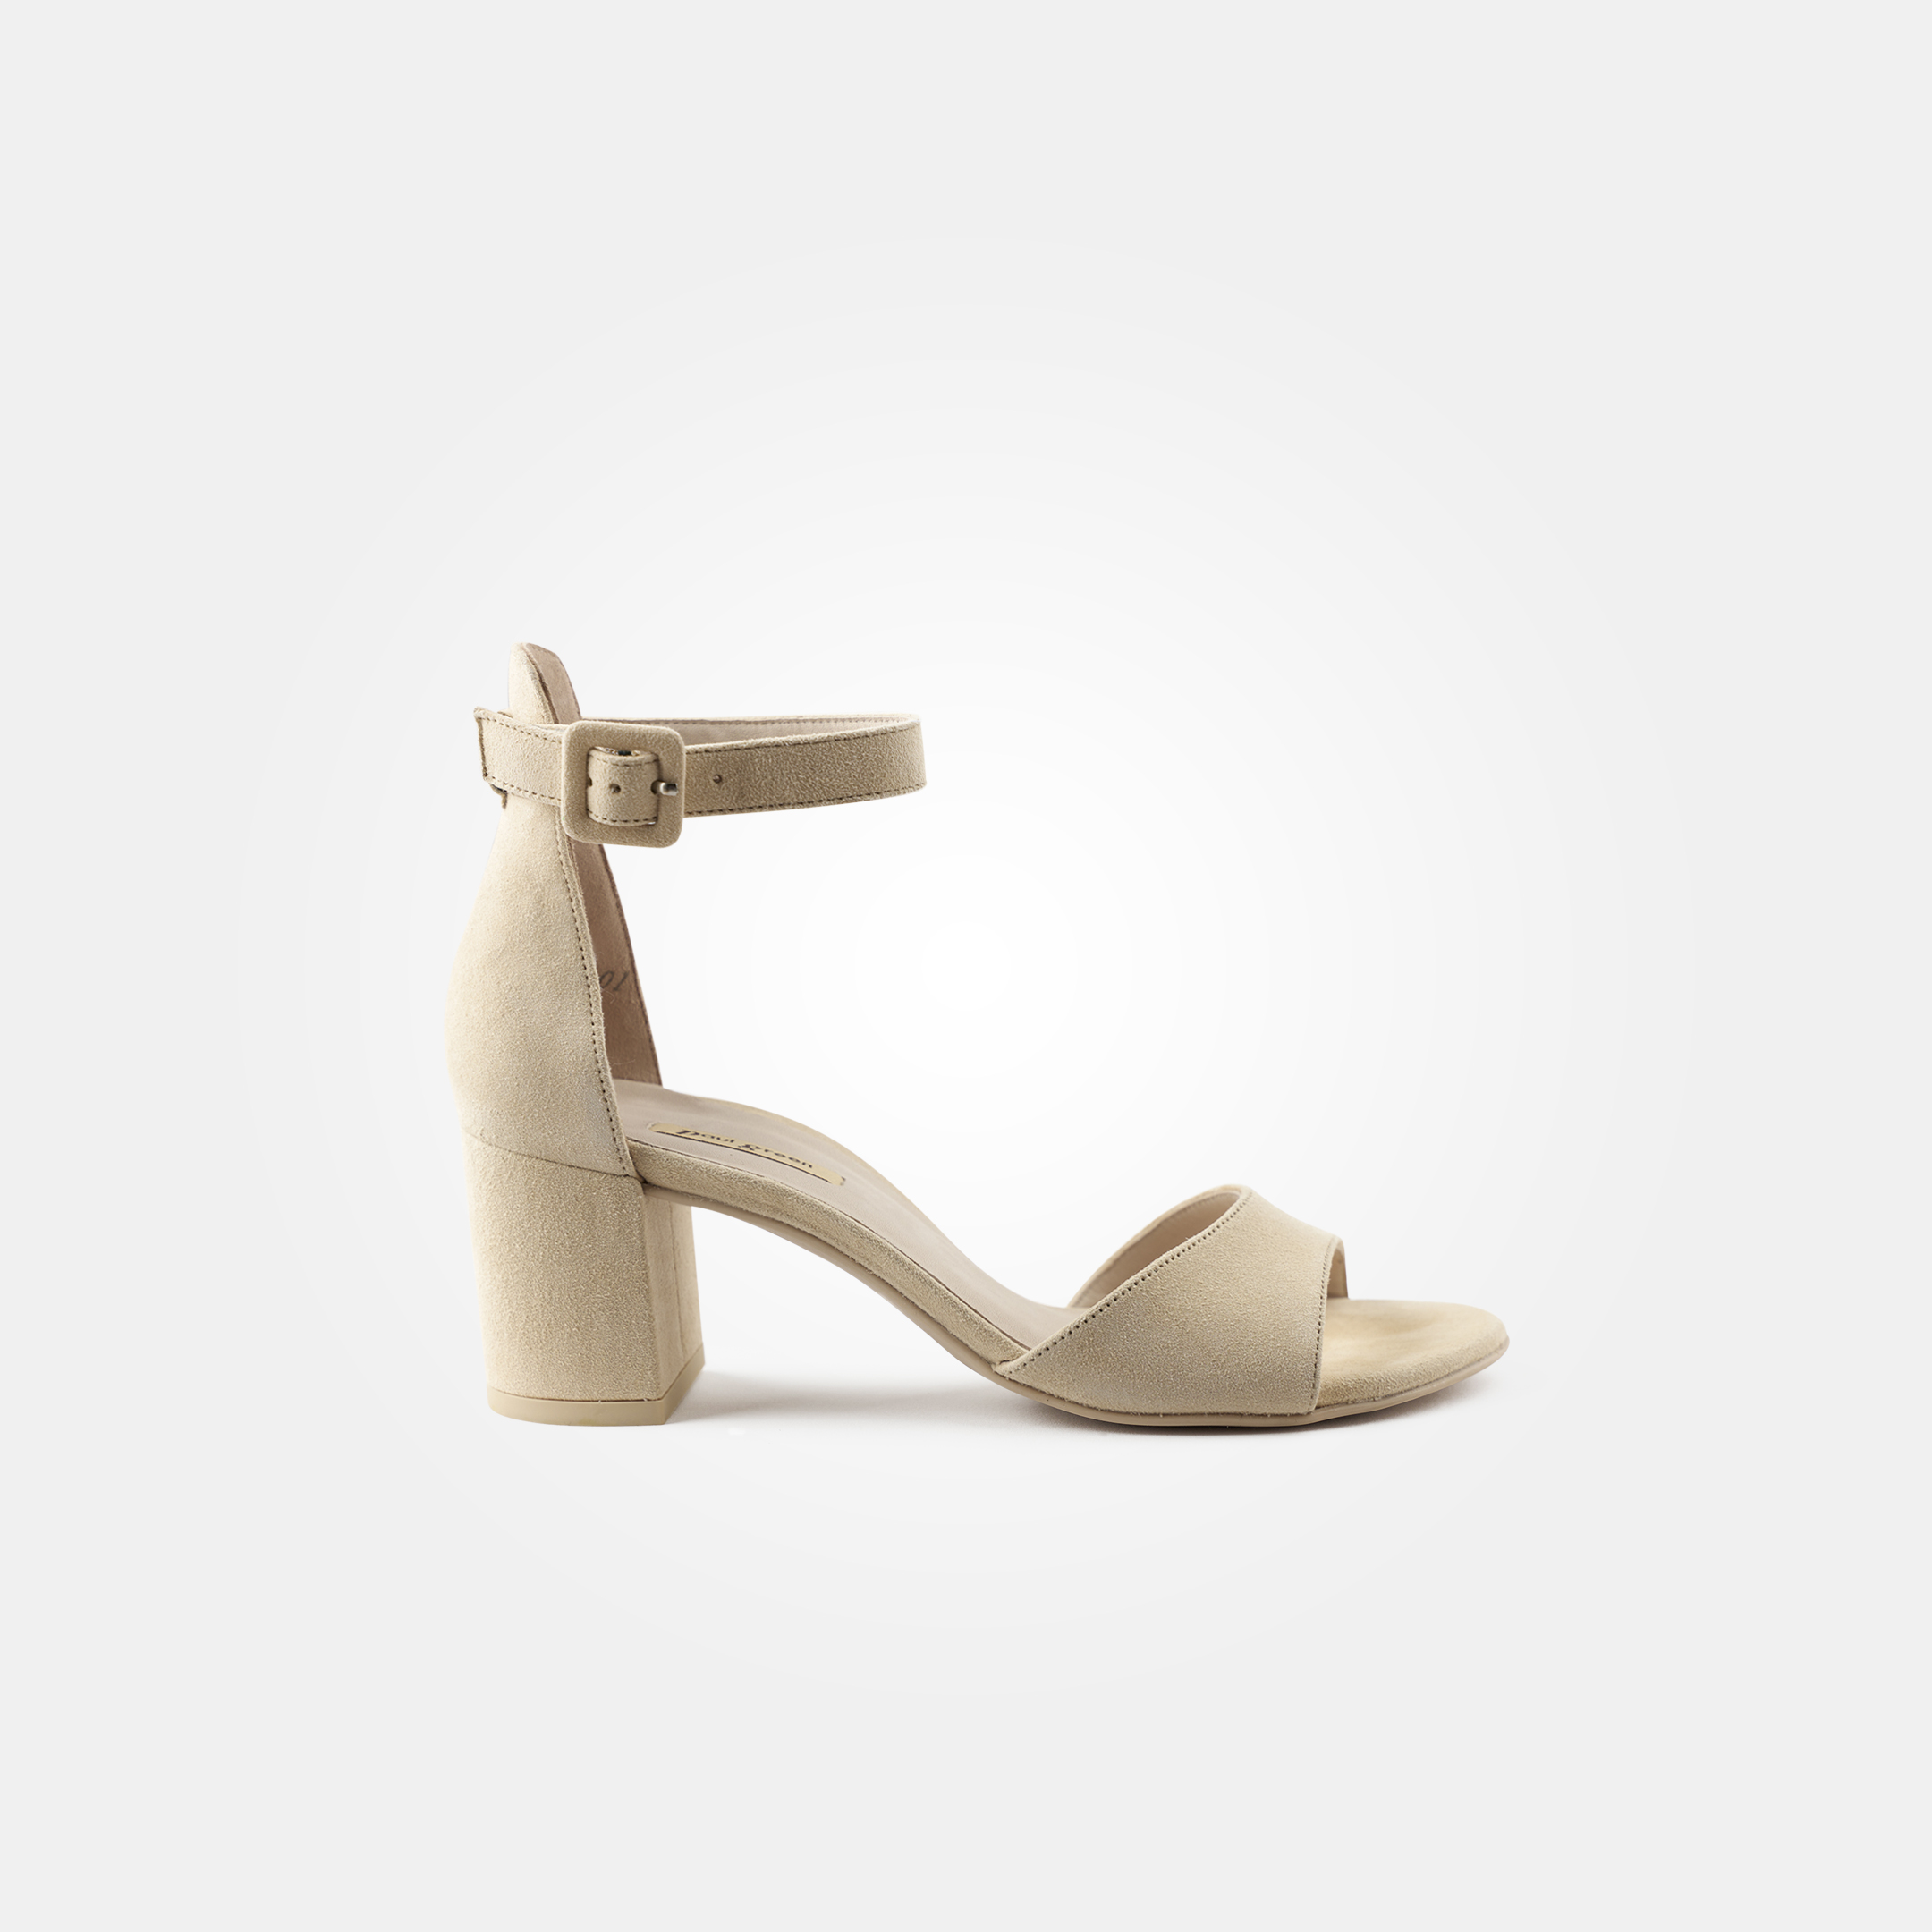 High-heel sandals in beige with block heel - Paul Green